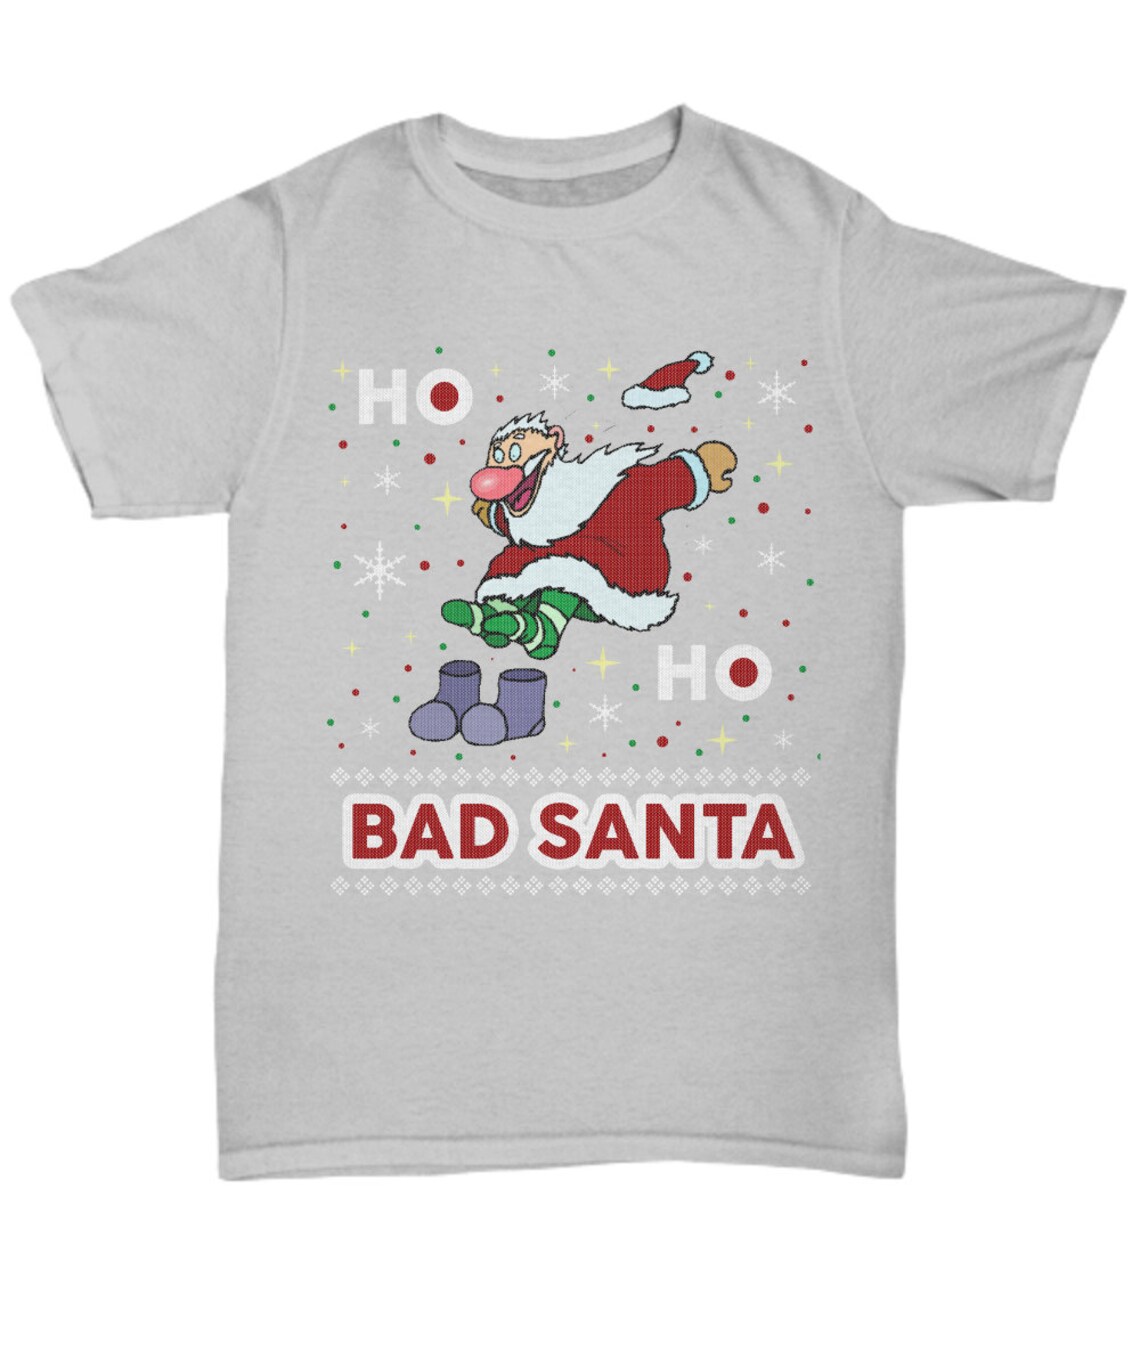 Bad Santa Christmas t shirtchristmas crew shirtcute | Etsy